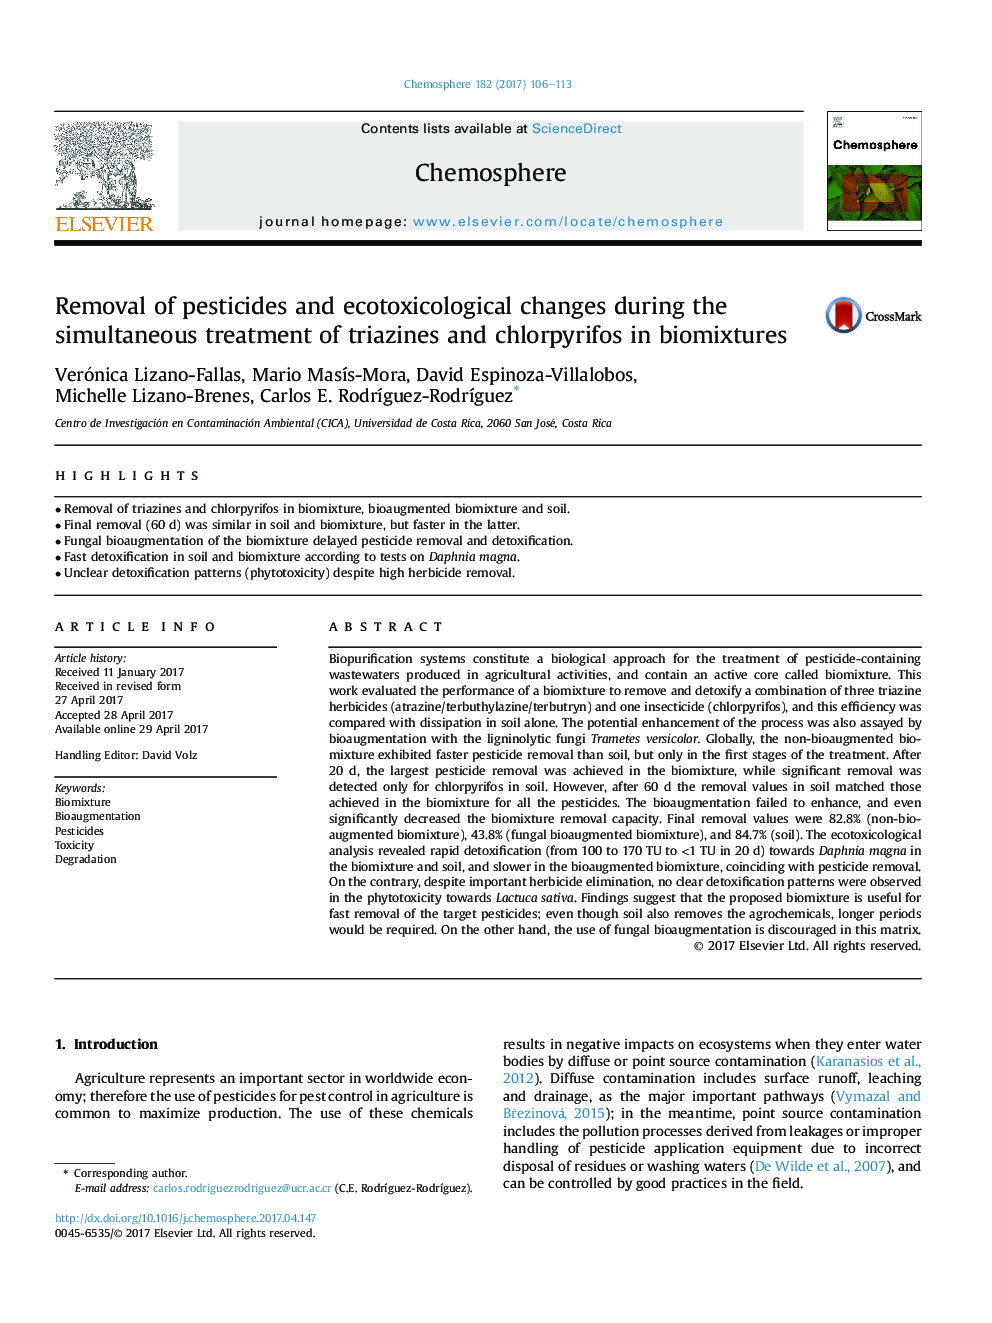 حذف سموم دفع آفات و تغییرات اکولوژیک در طول درمان همزمان تریازین و کلرپیریفوس در ترکیبات زیستی 